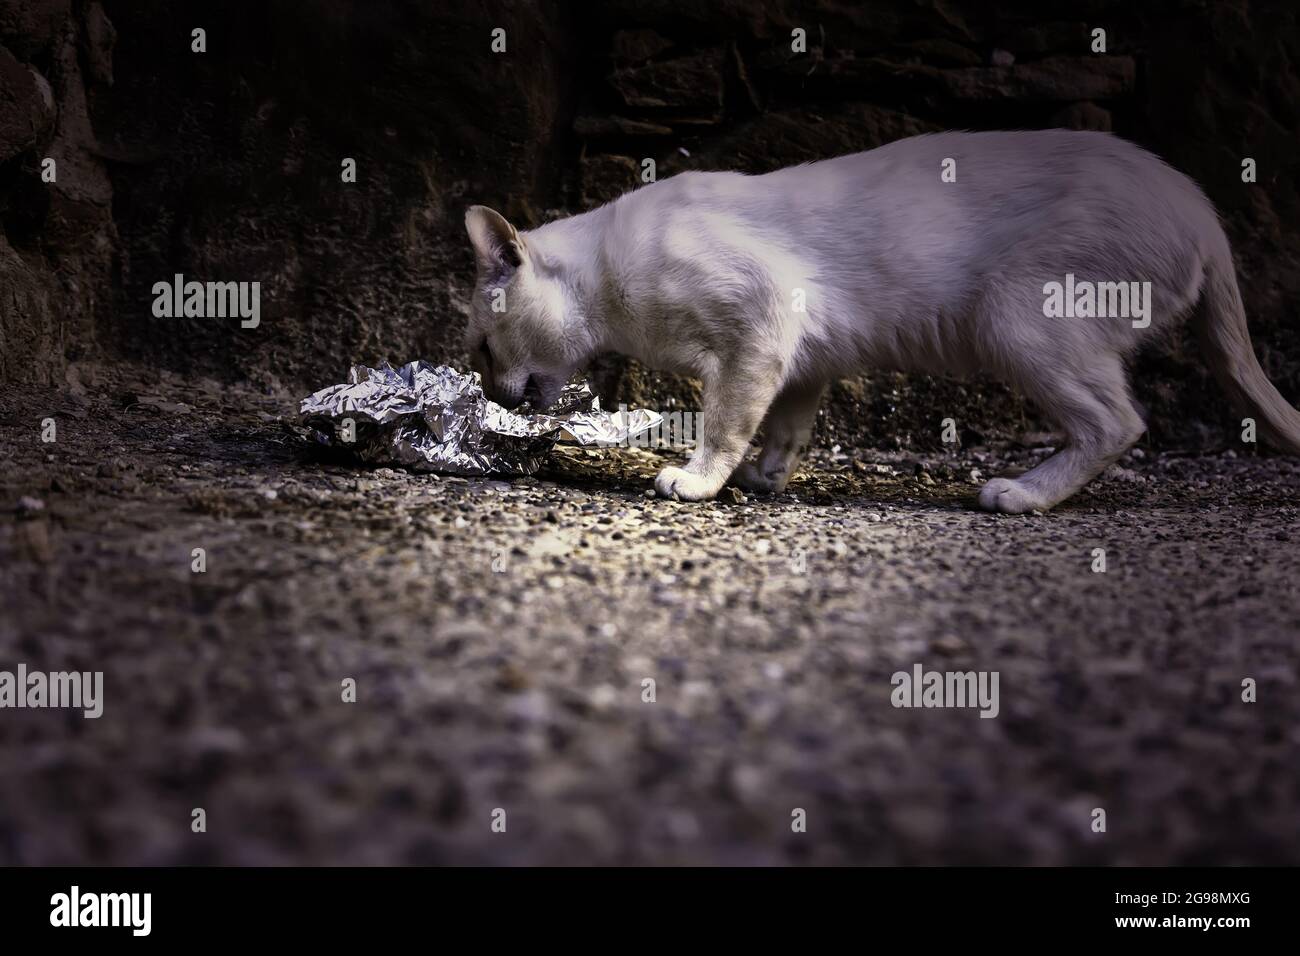 Abandoned stray cat, free animals, mammals, pets Stock Photo